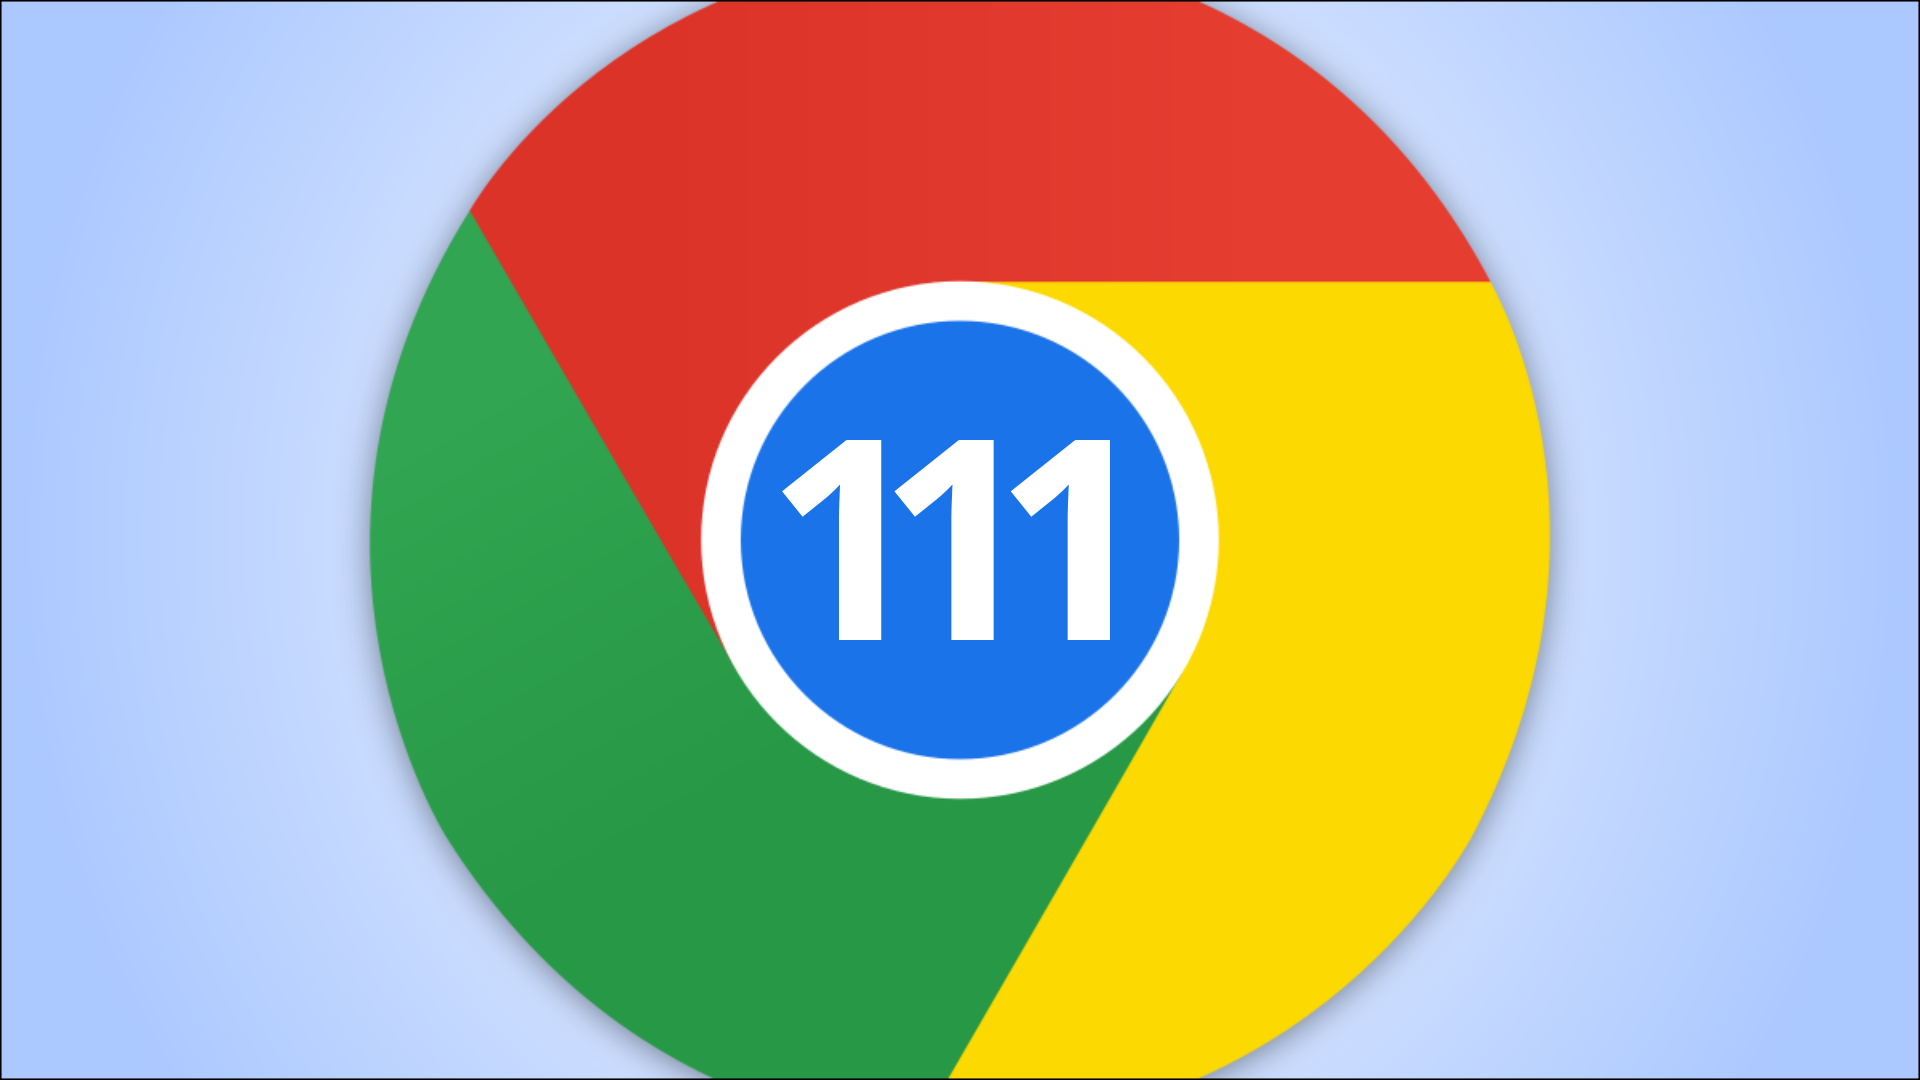 Chrome 111 logo